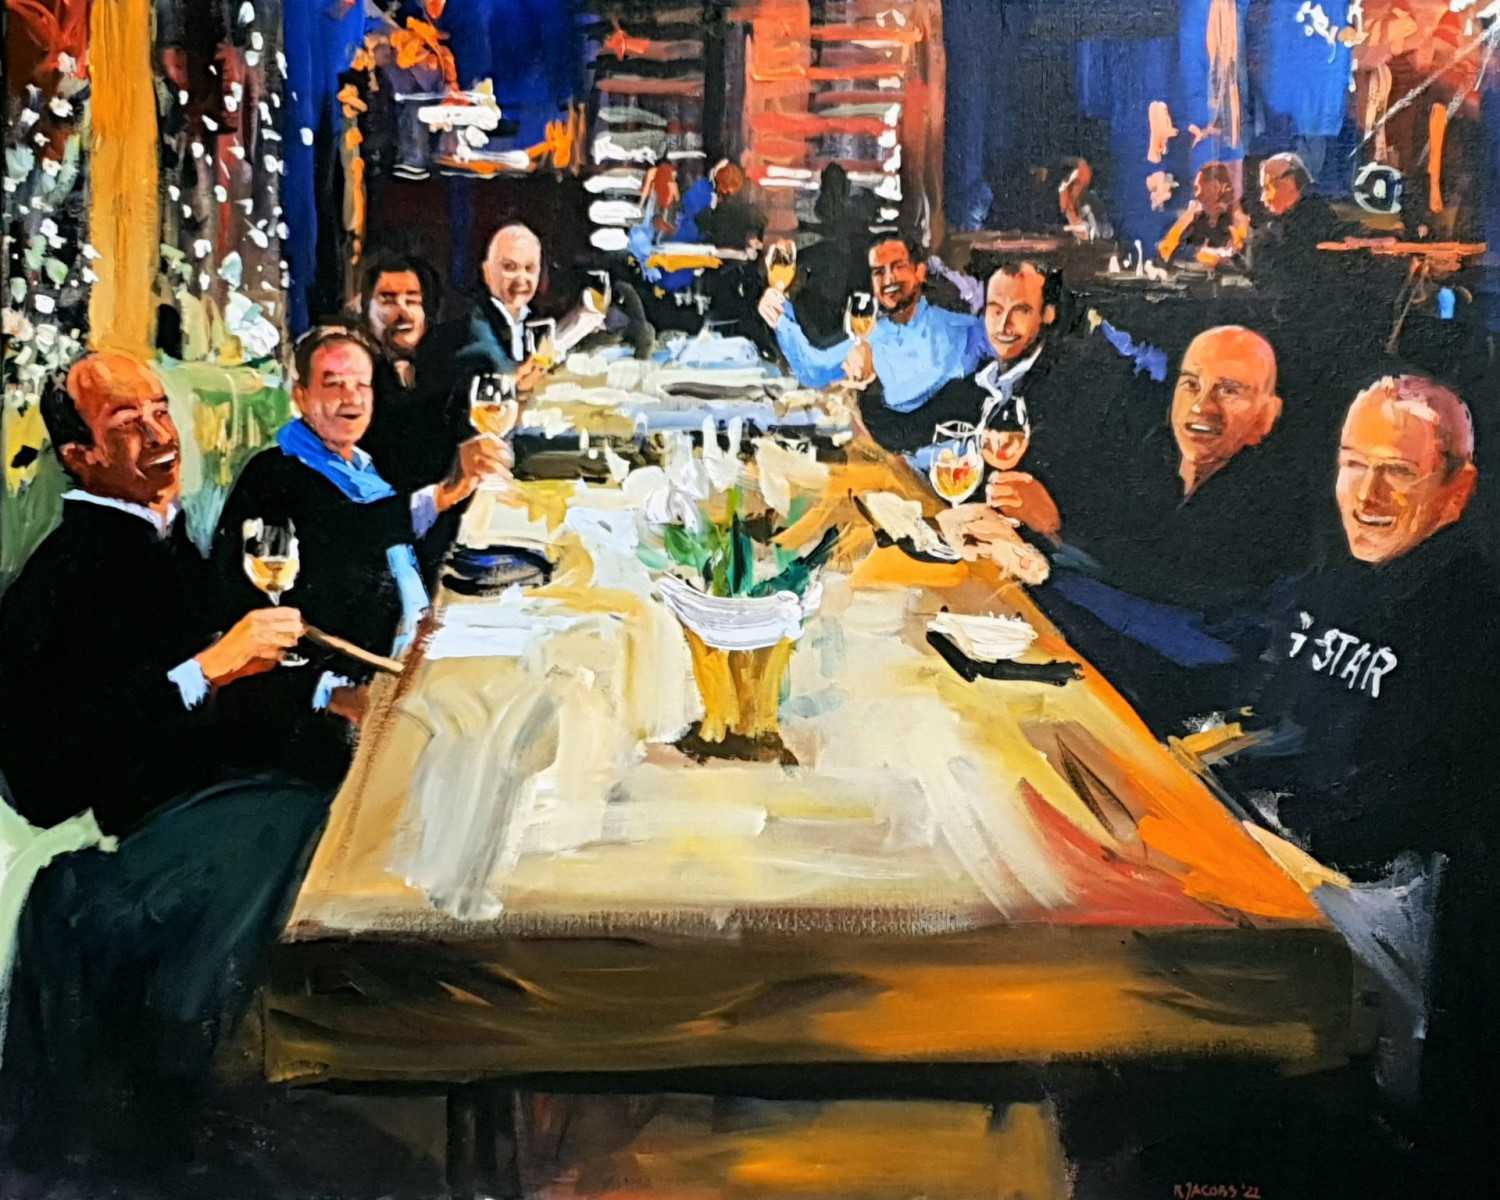 Laat je smaakpapillen verwennen terwijl Rob Jacobs live schildert tijdens het heerlijke diner in Amsterdam.